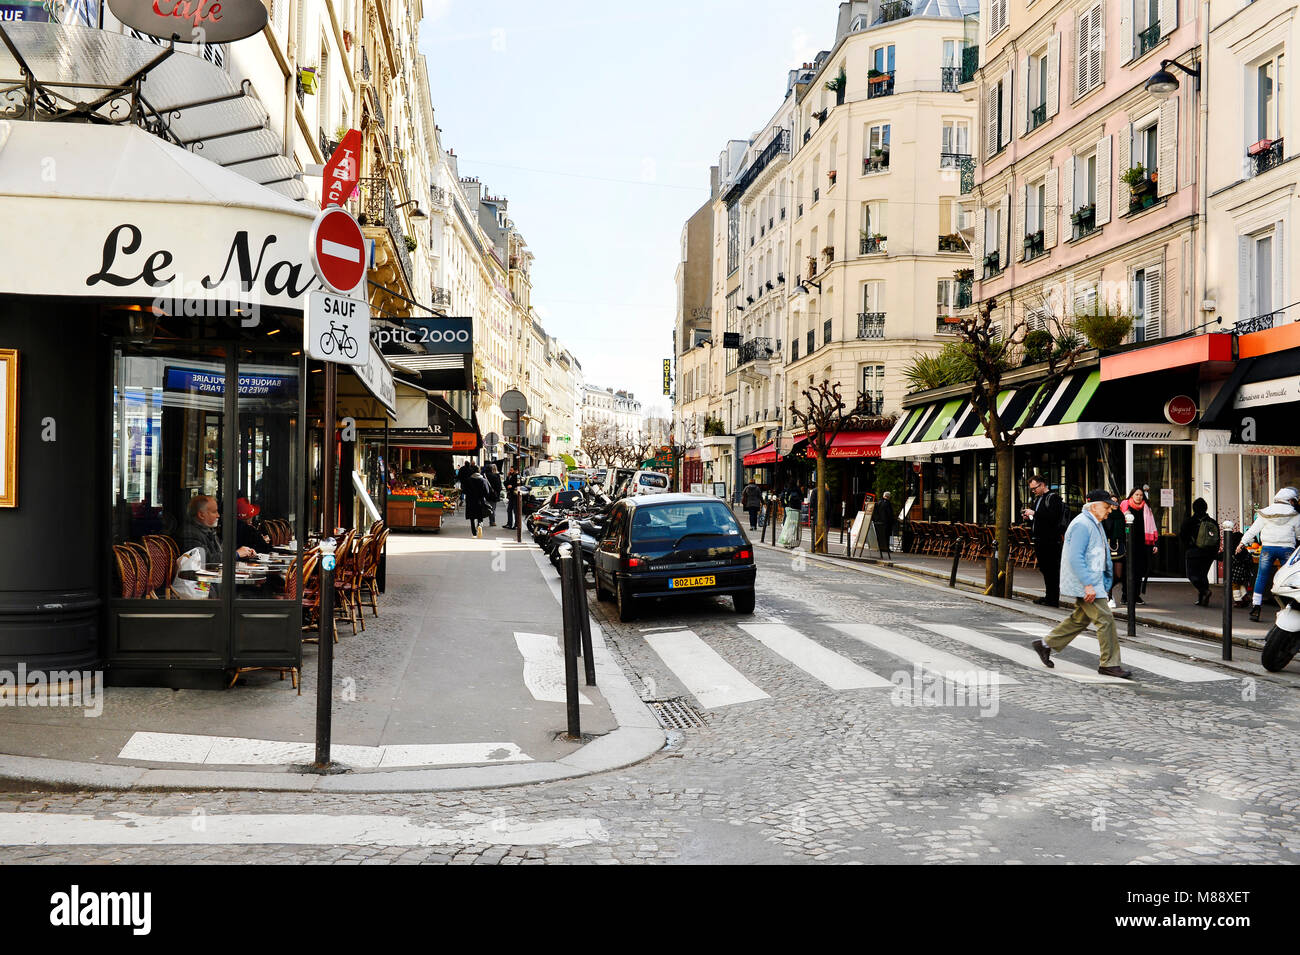 Rue des Abbesses - Montmartre area, Paris, France Stock Photo